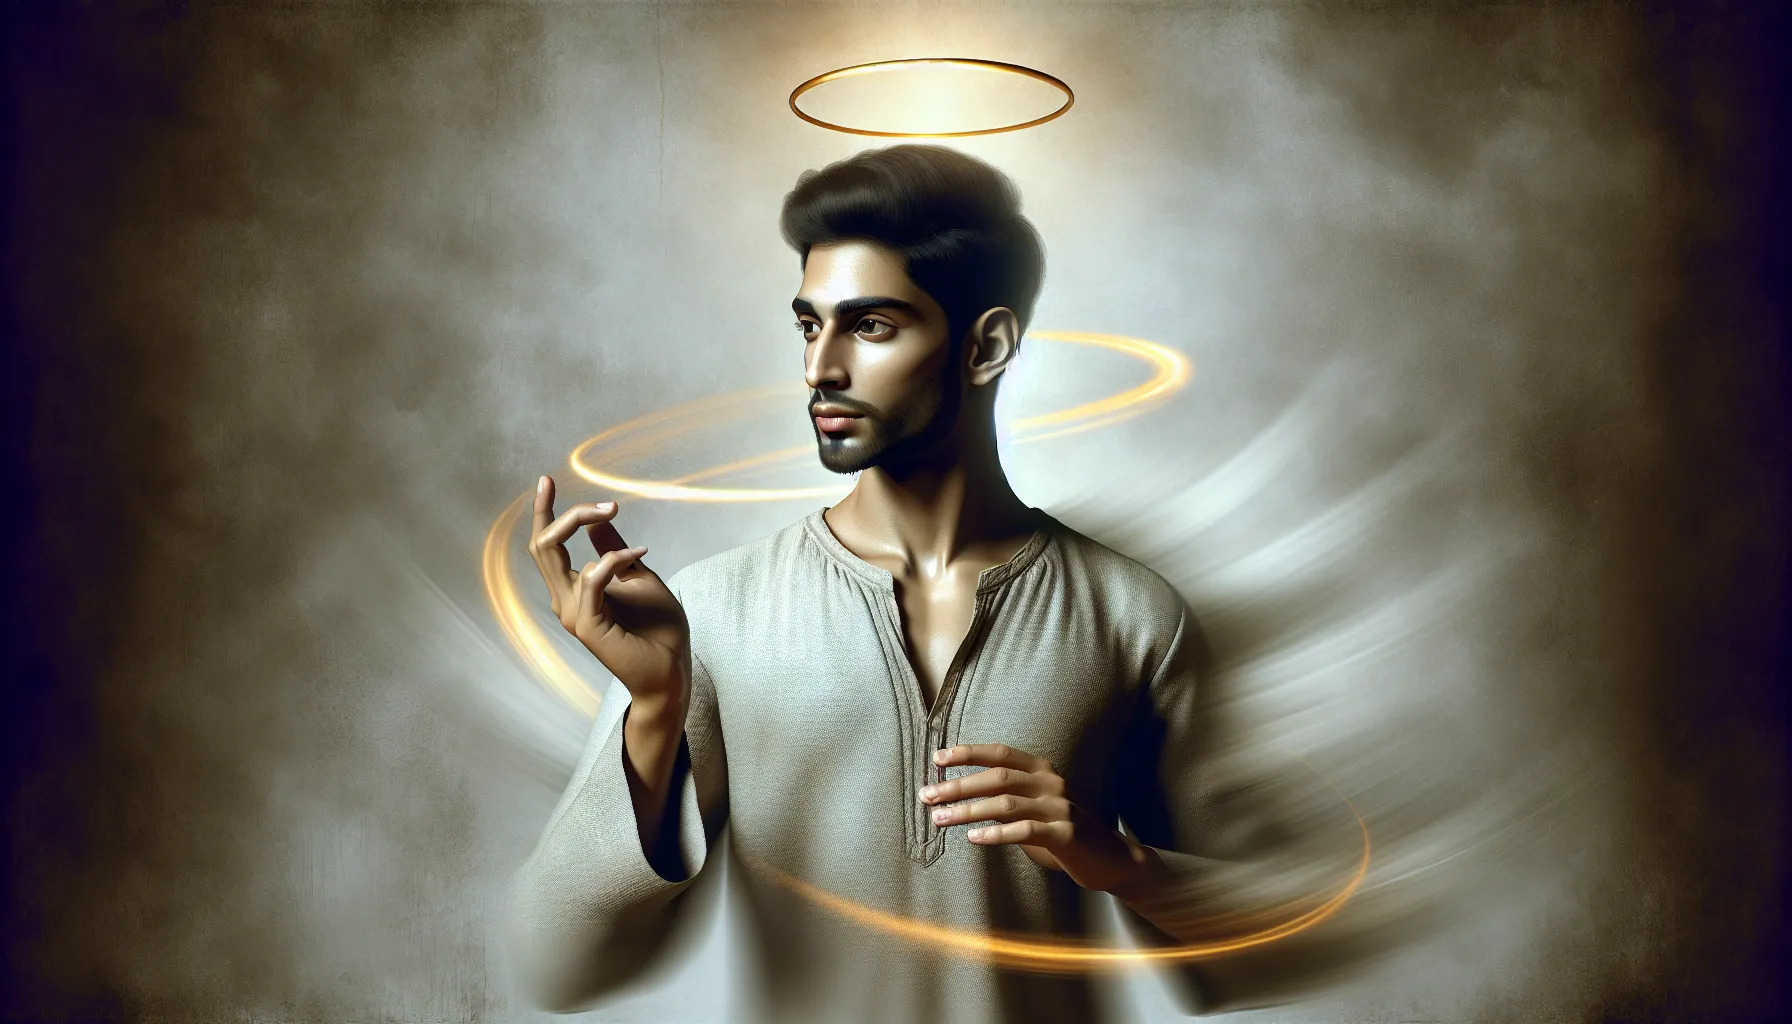 Imagen de un ser humano con una aureola, representando la dualidad entre lo humano y lo divino en la naturaleza de Dios.